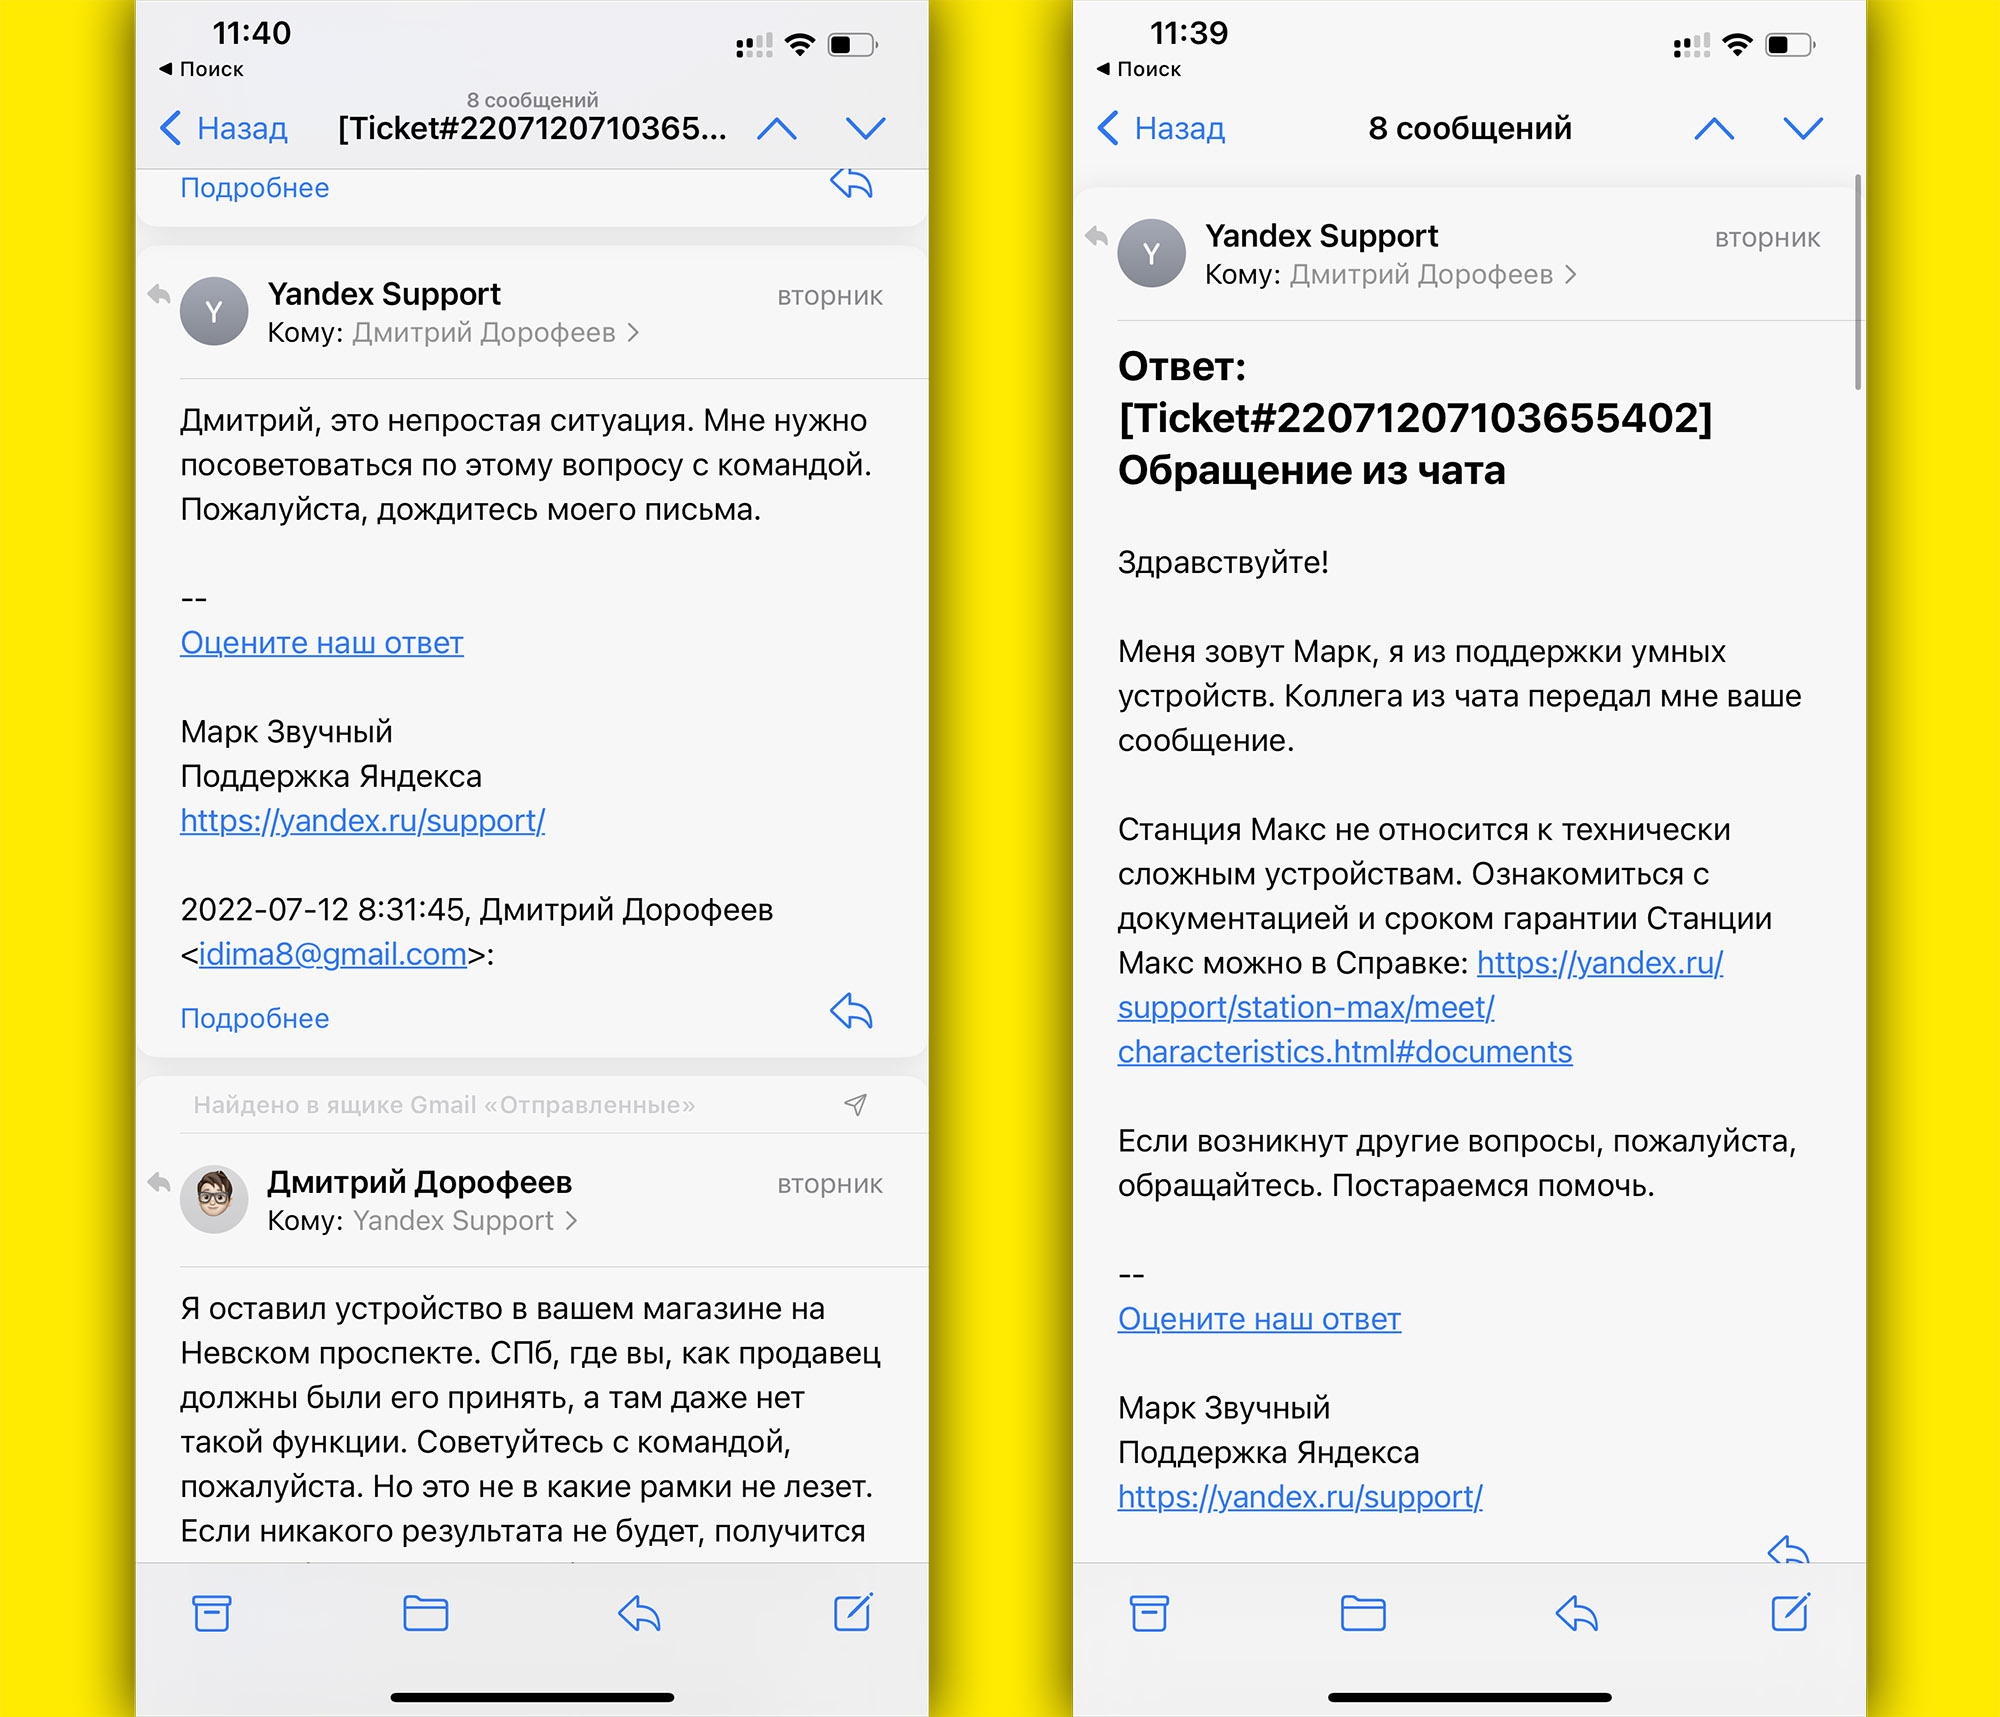 Московская неисправная станция не заменяется Яндексом по гарантии